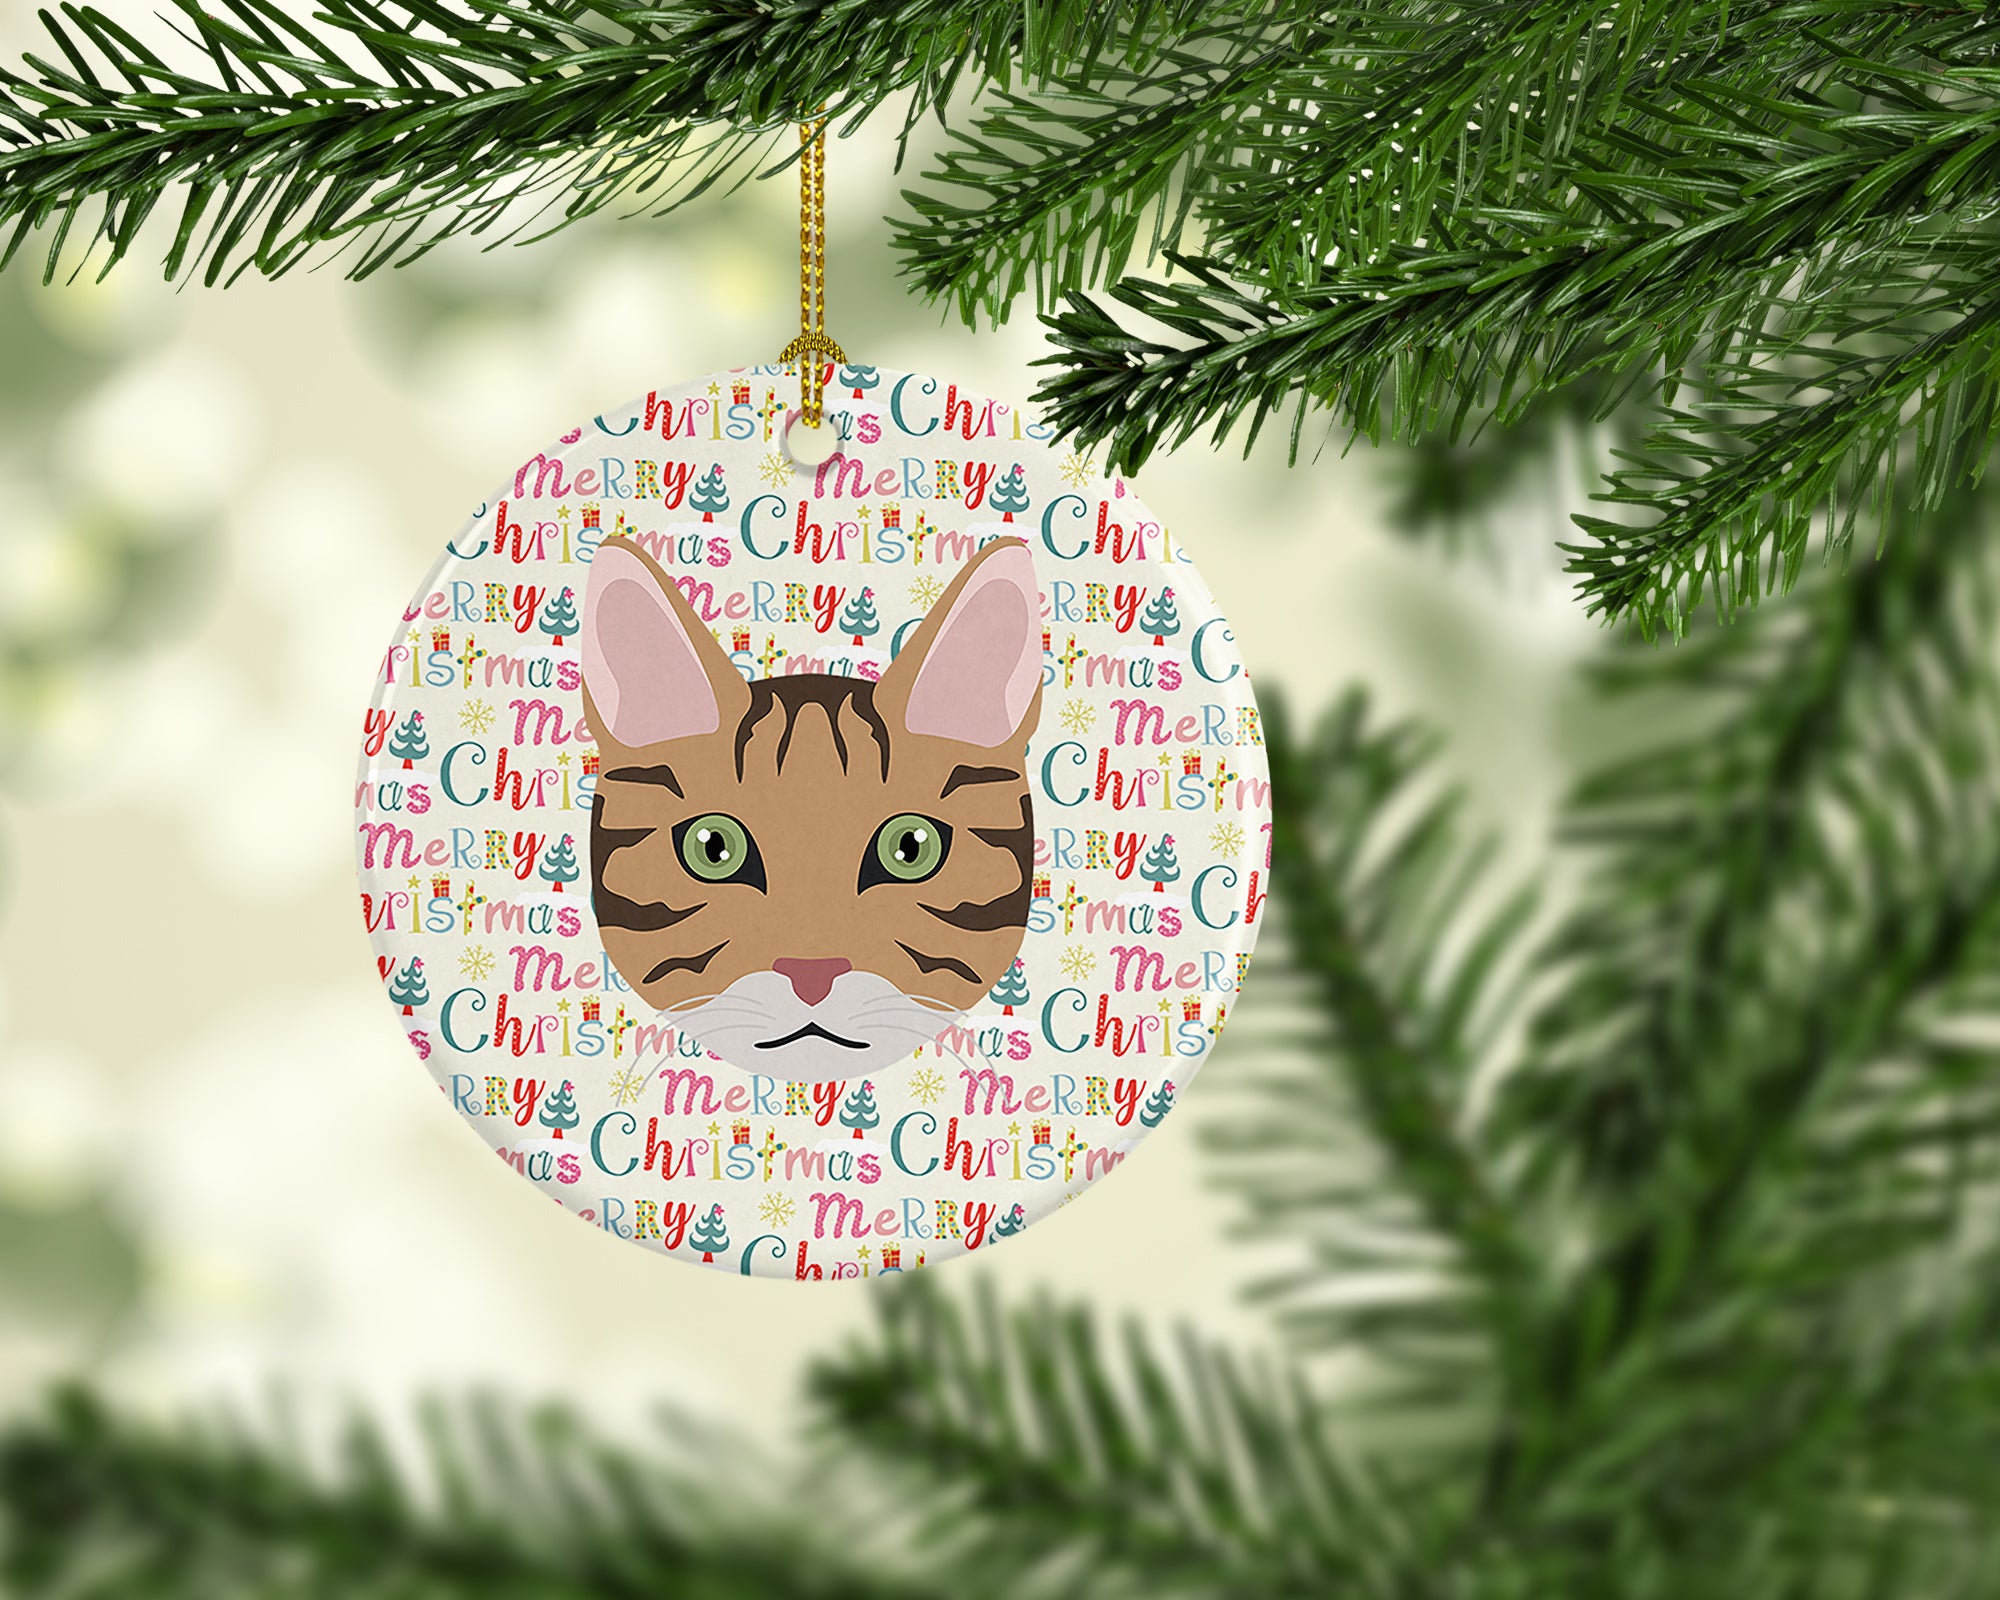 California Spangled Cat Christmas Ceramic Ornament - the-store.com